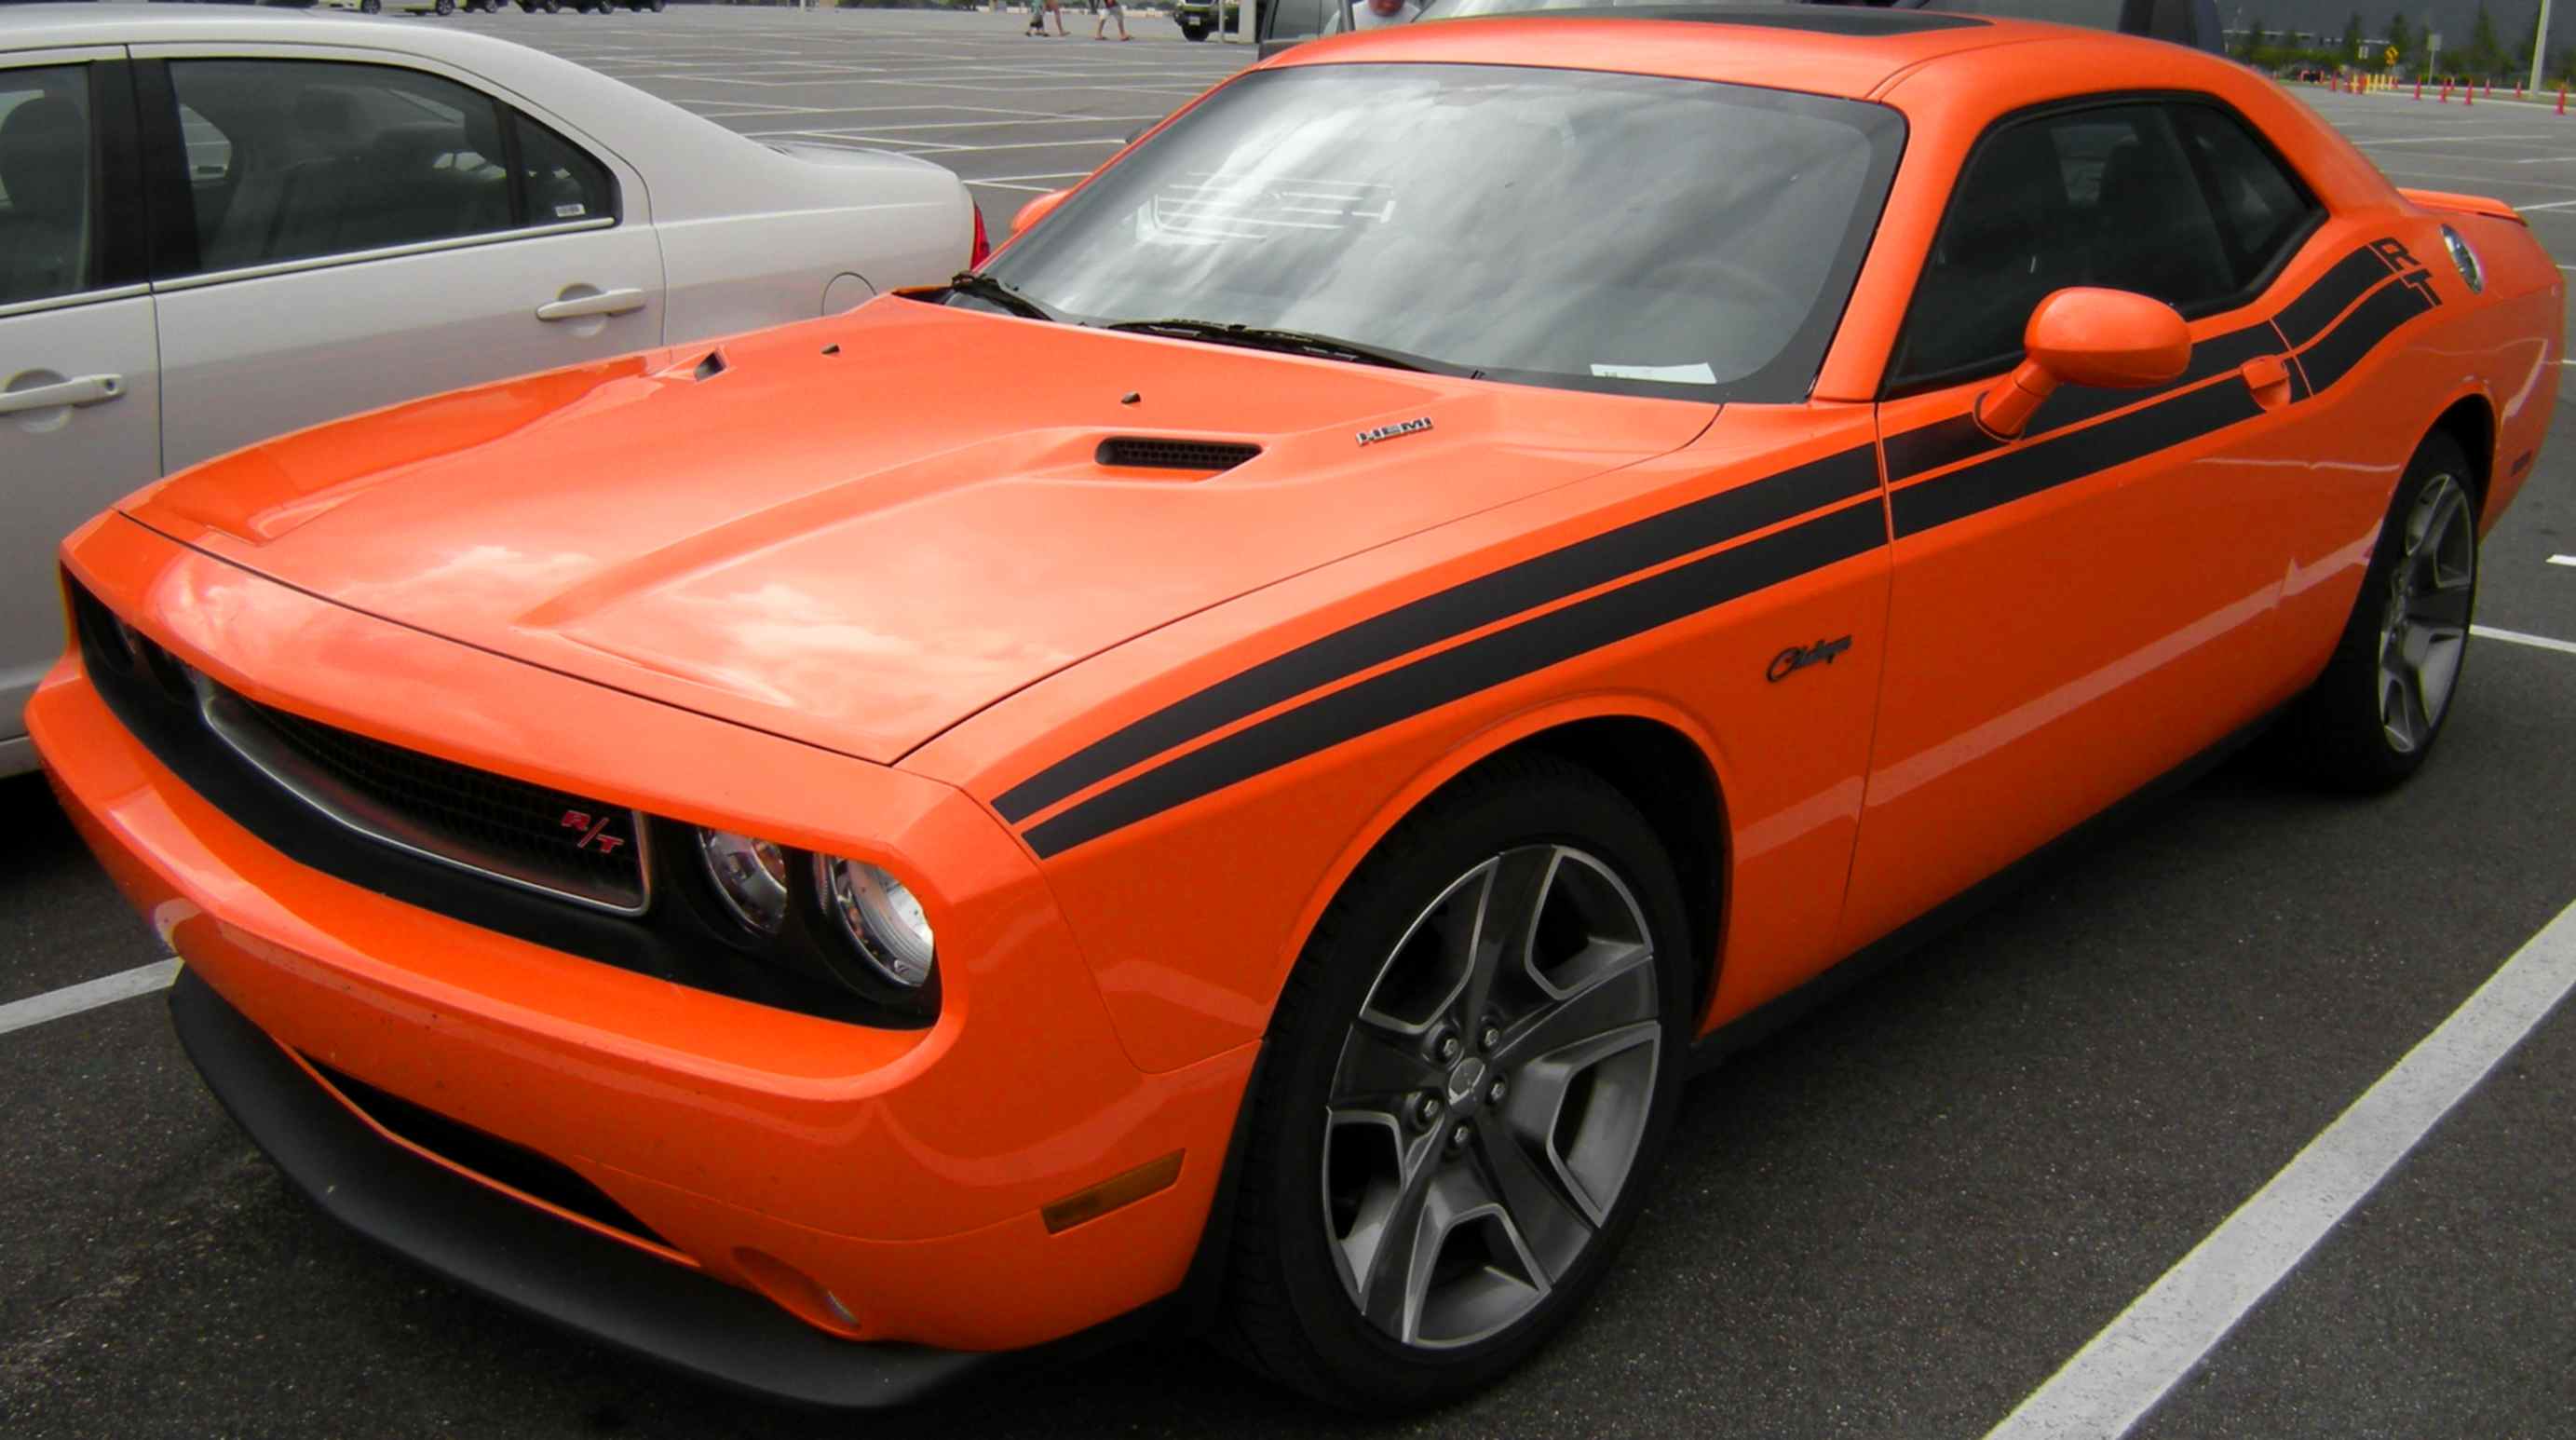 An orange Dodge Challenger